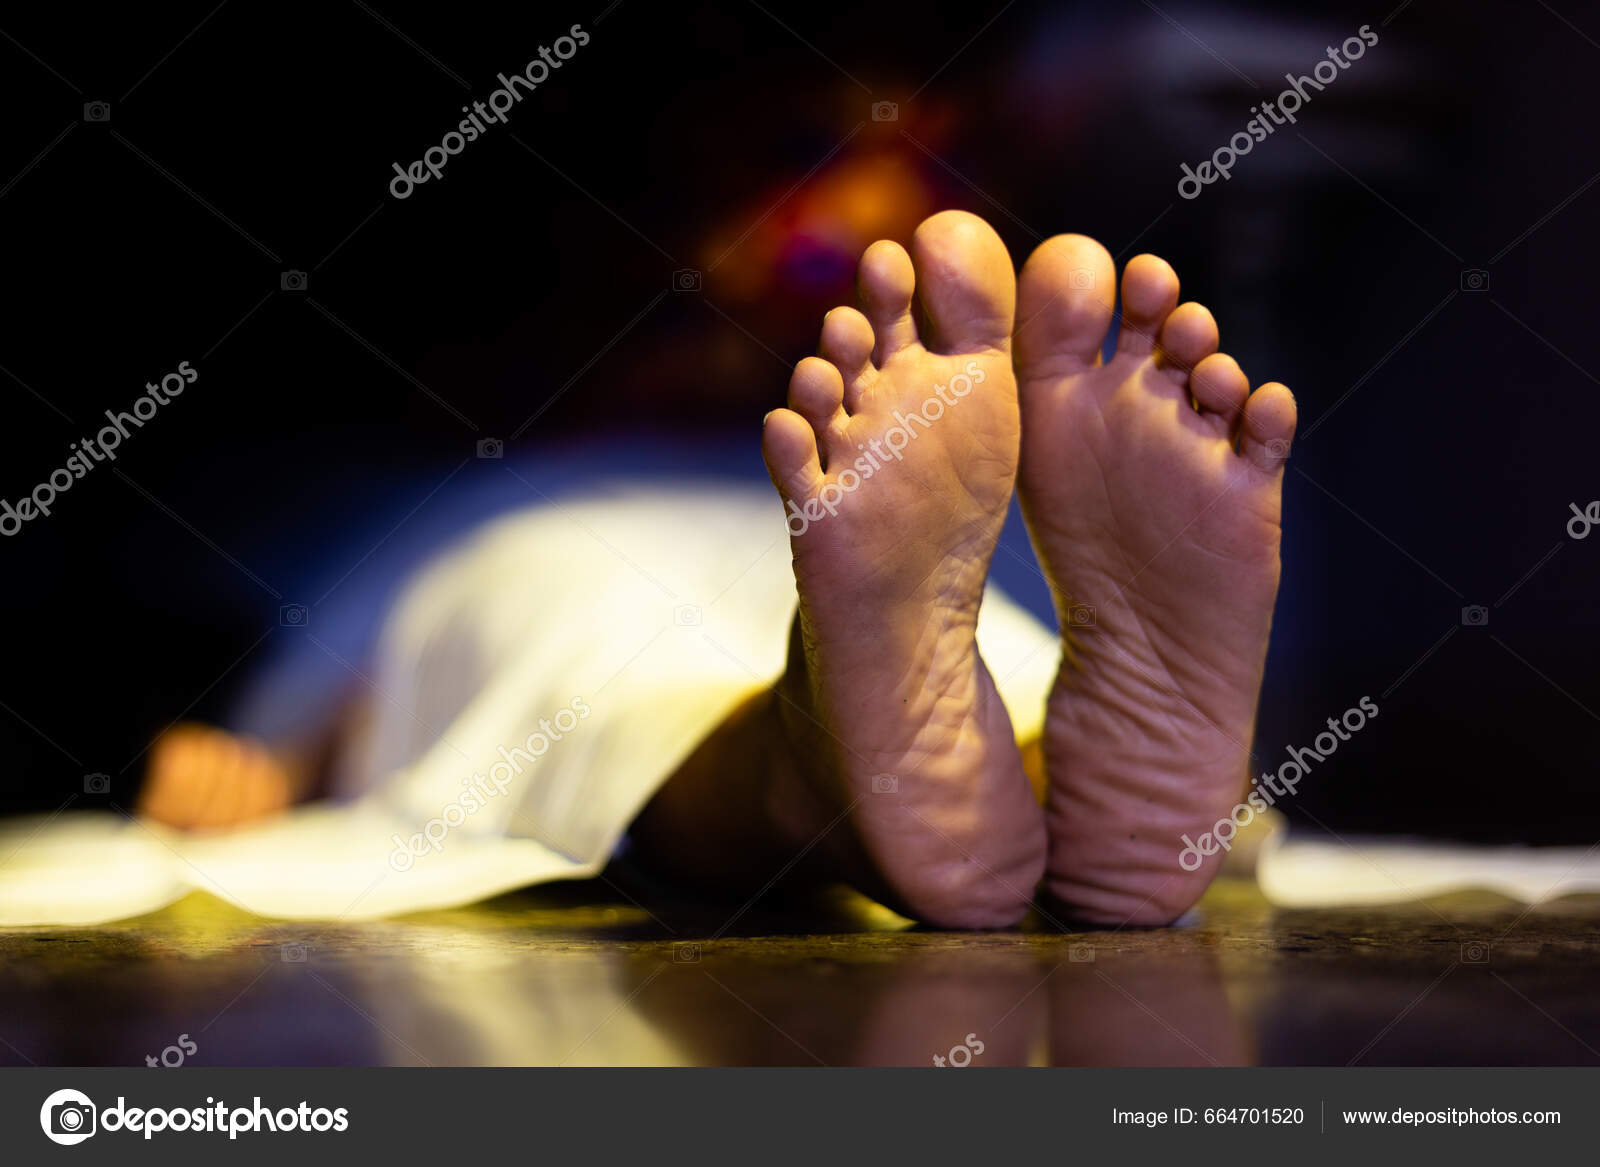 indian dead body photos